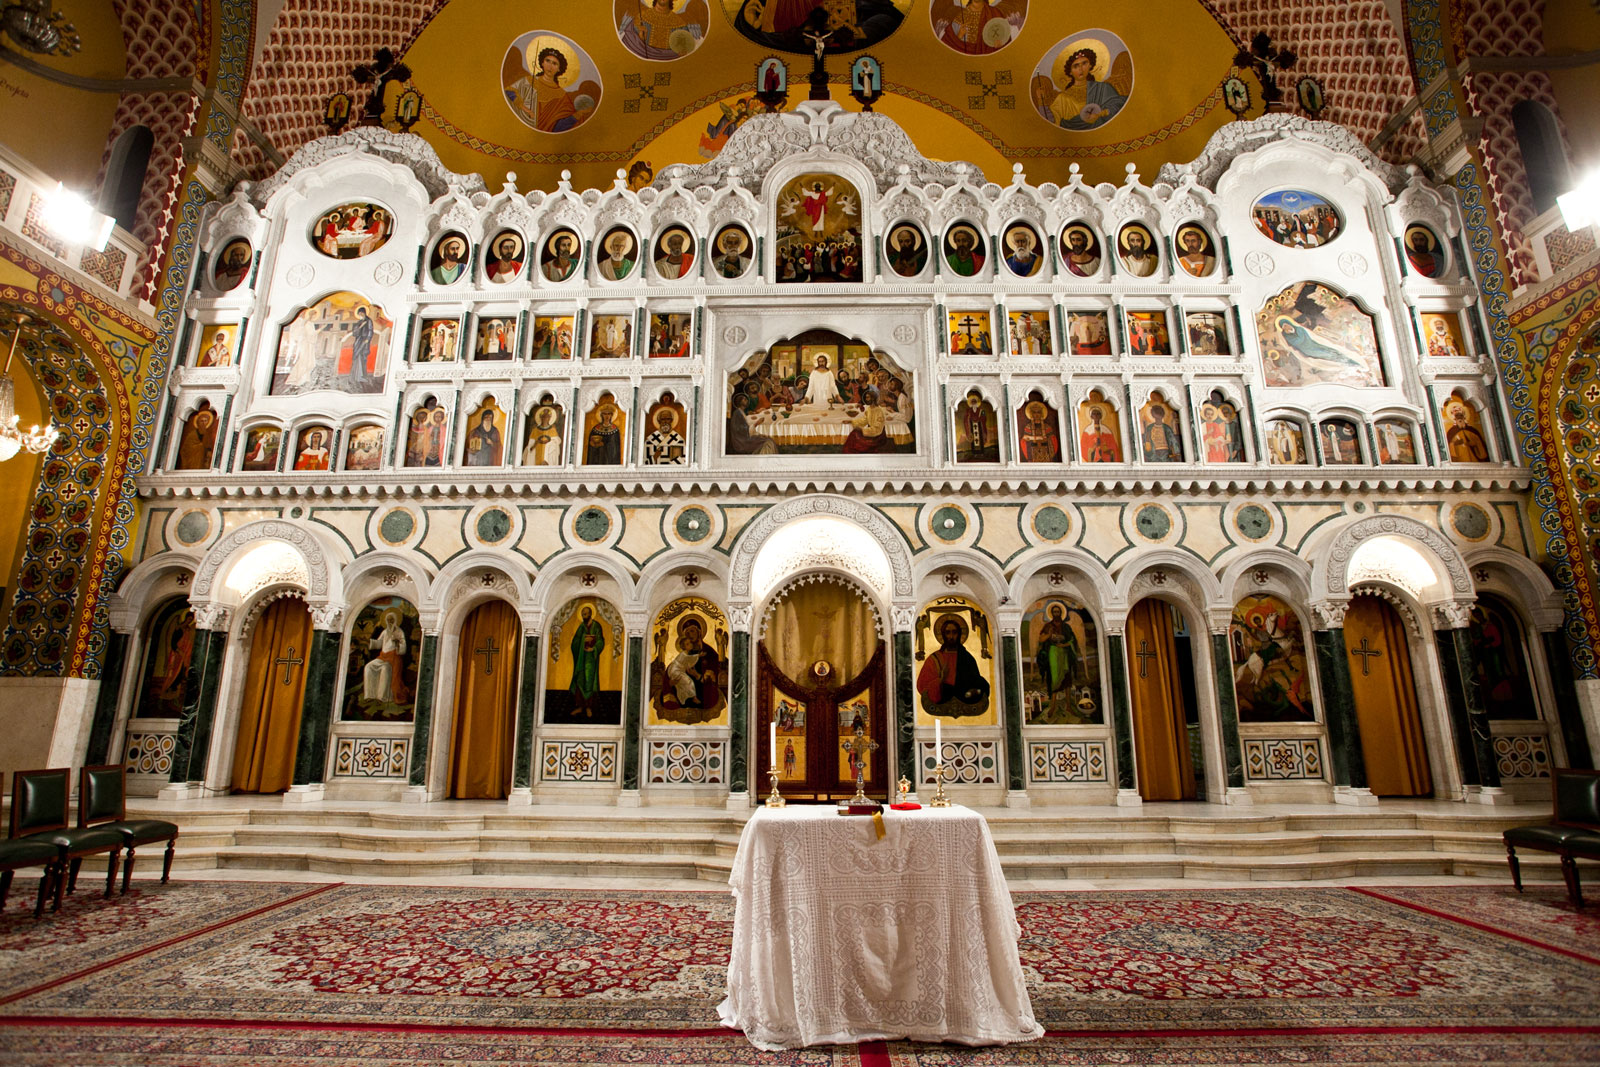 FL06460016 - Afinal, existe alguma relação entre a Catedral Ortodoxa e o Paraíso?